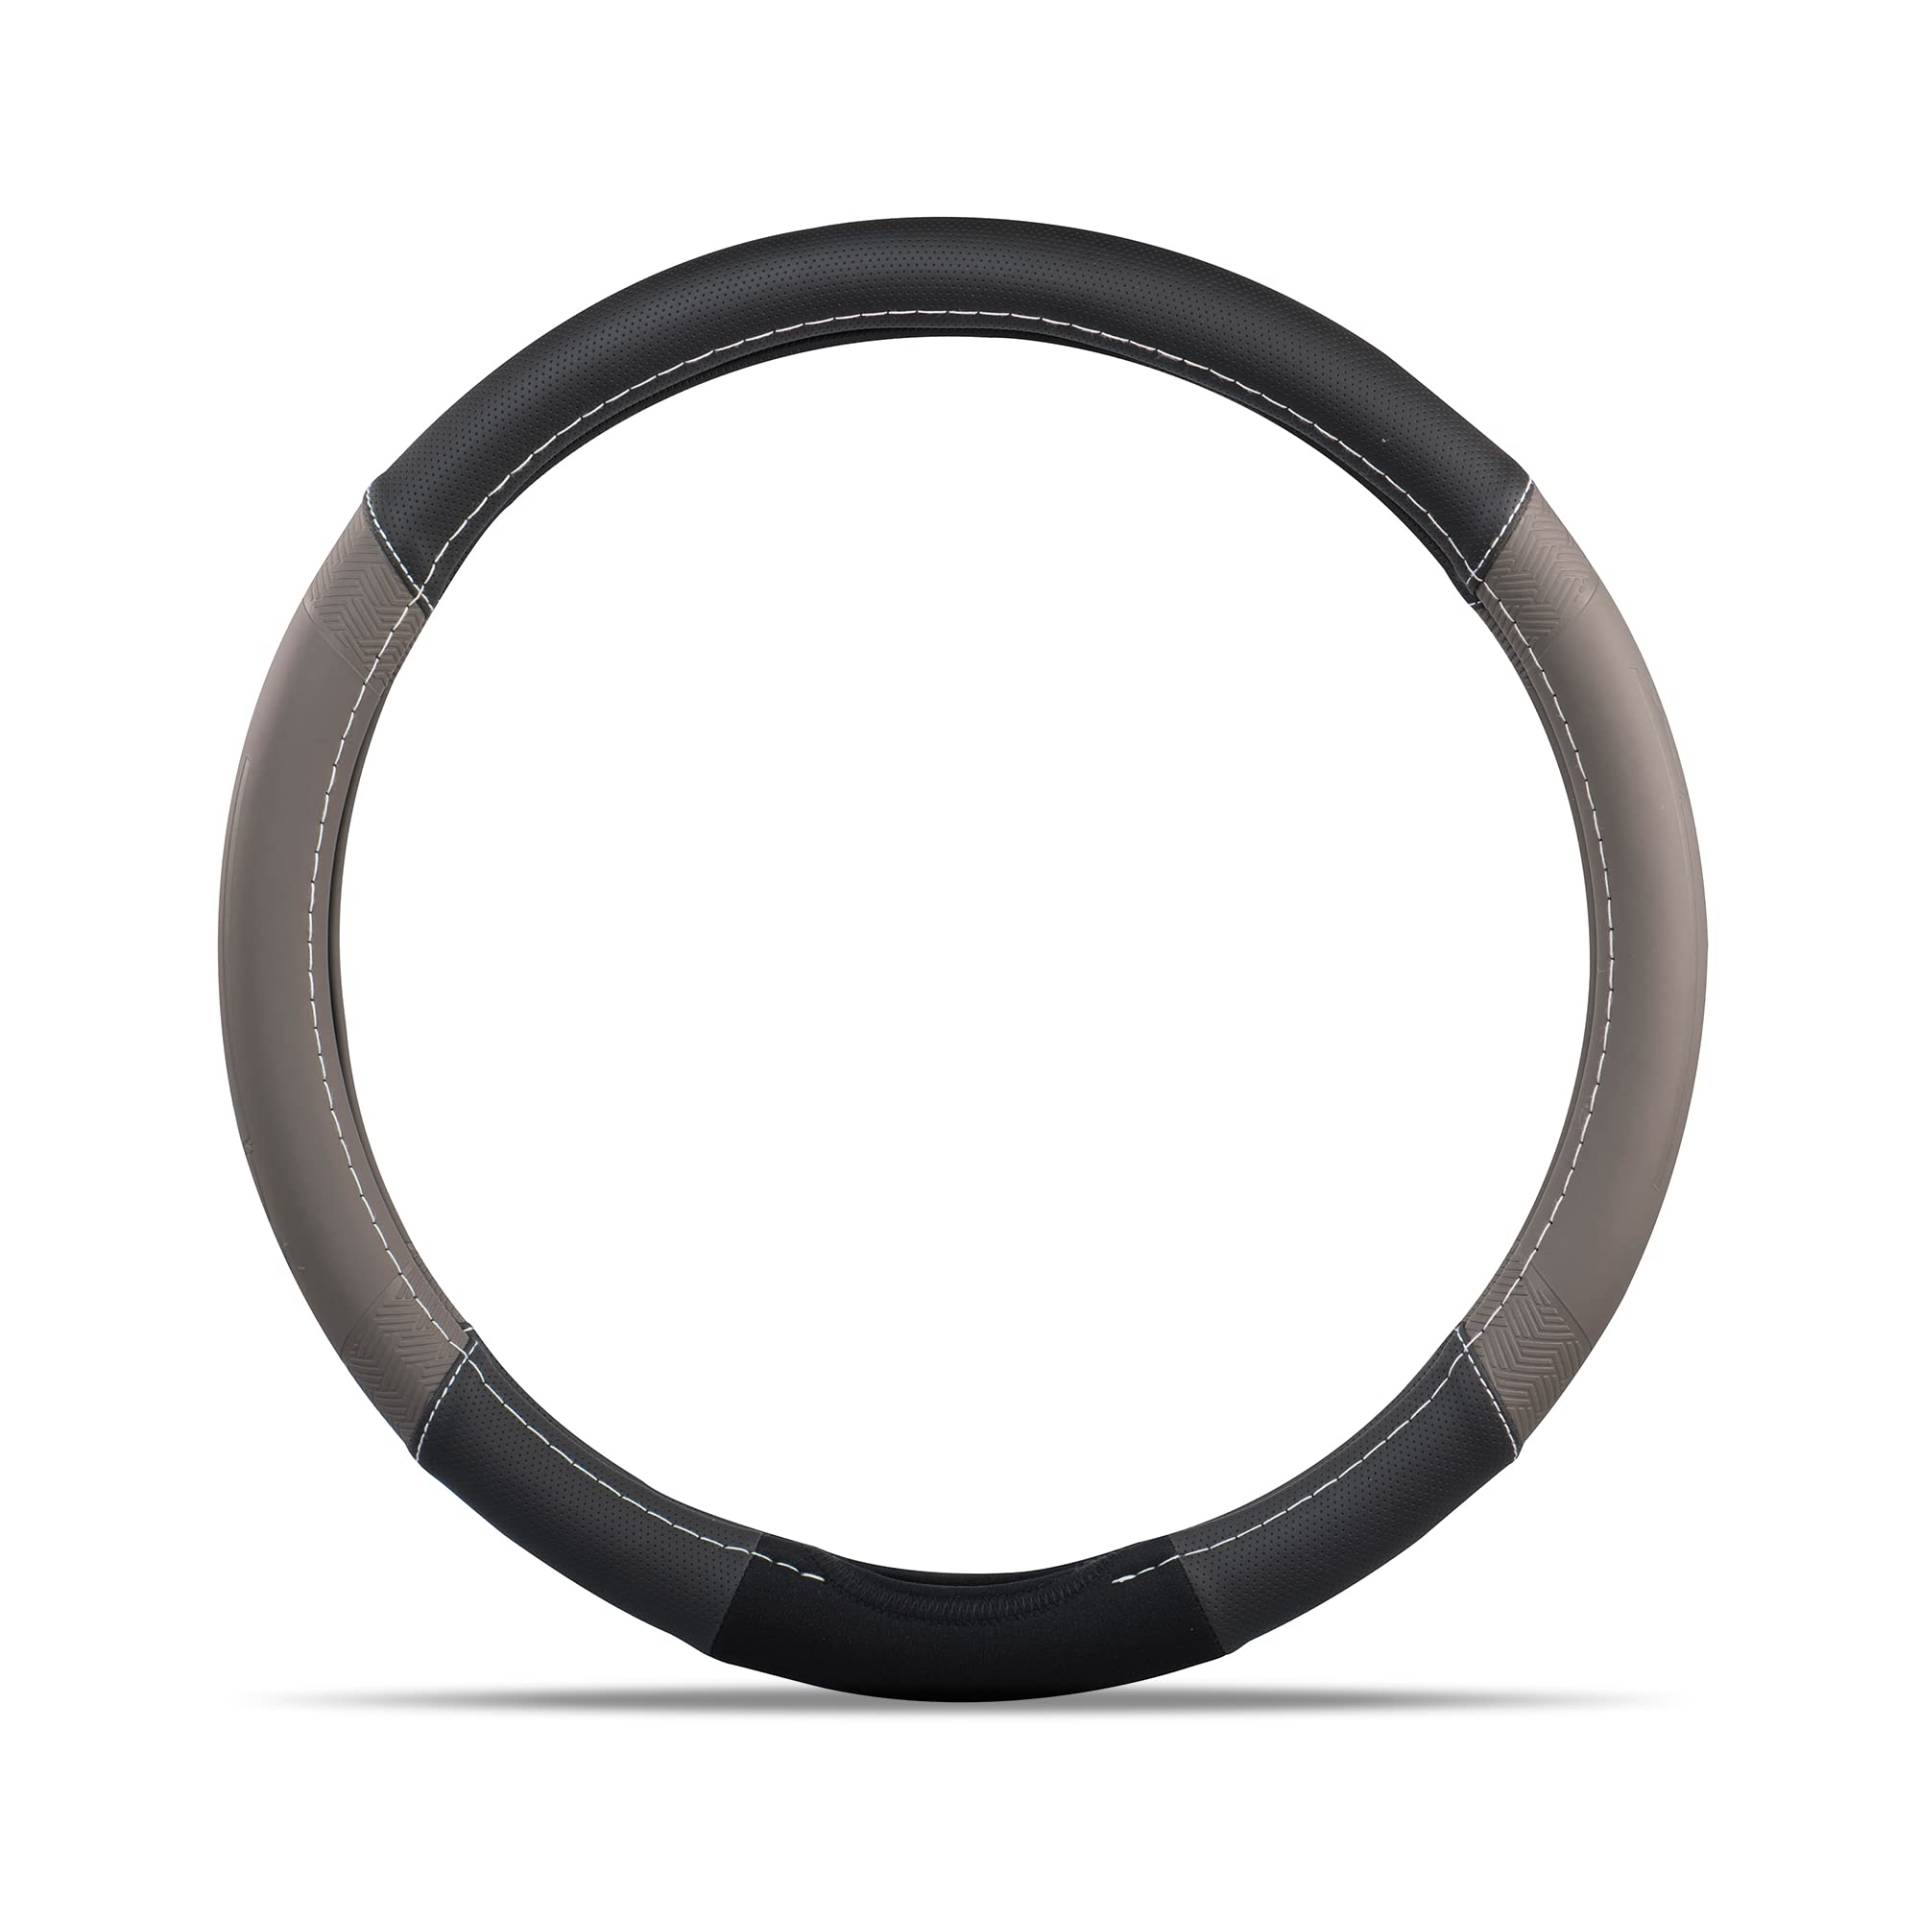 MICHELIN iFit Premium grau-schwarz Leder Lenkradbezug. Für die meisten Autos, Durchmesser 36,8-39,3 cm. Einfache Montage. Stilvolle Lenkradabdeckung schützt vor Abnutzung. Autozubehör von MICHELIN